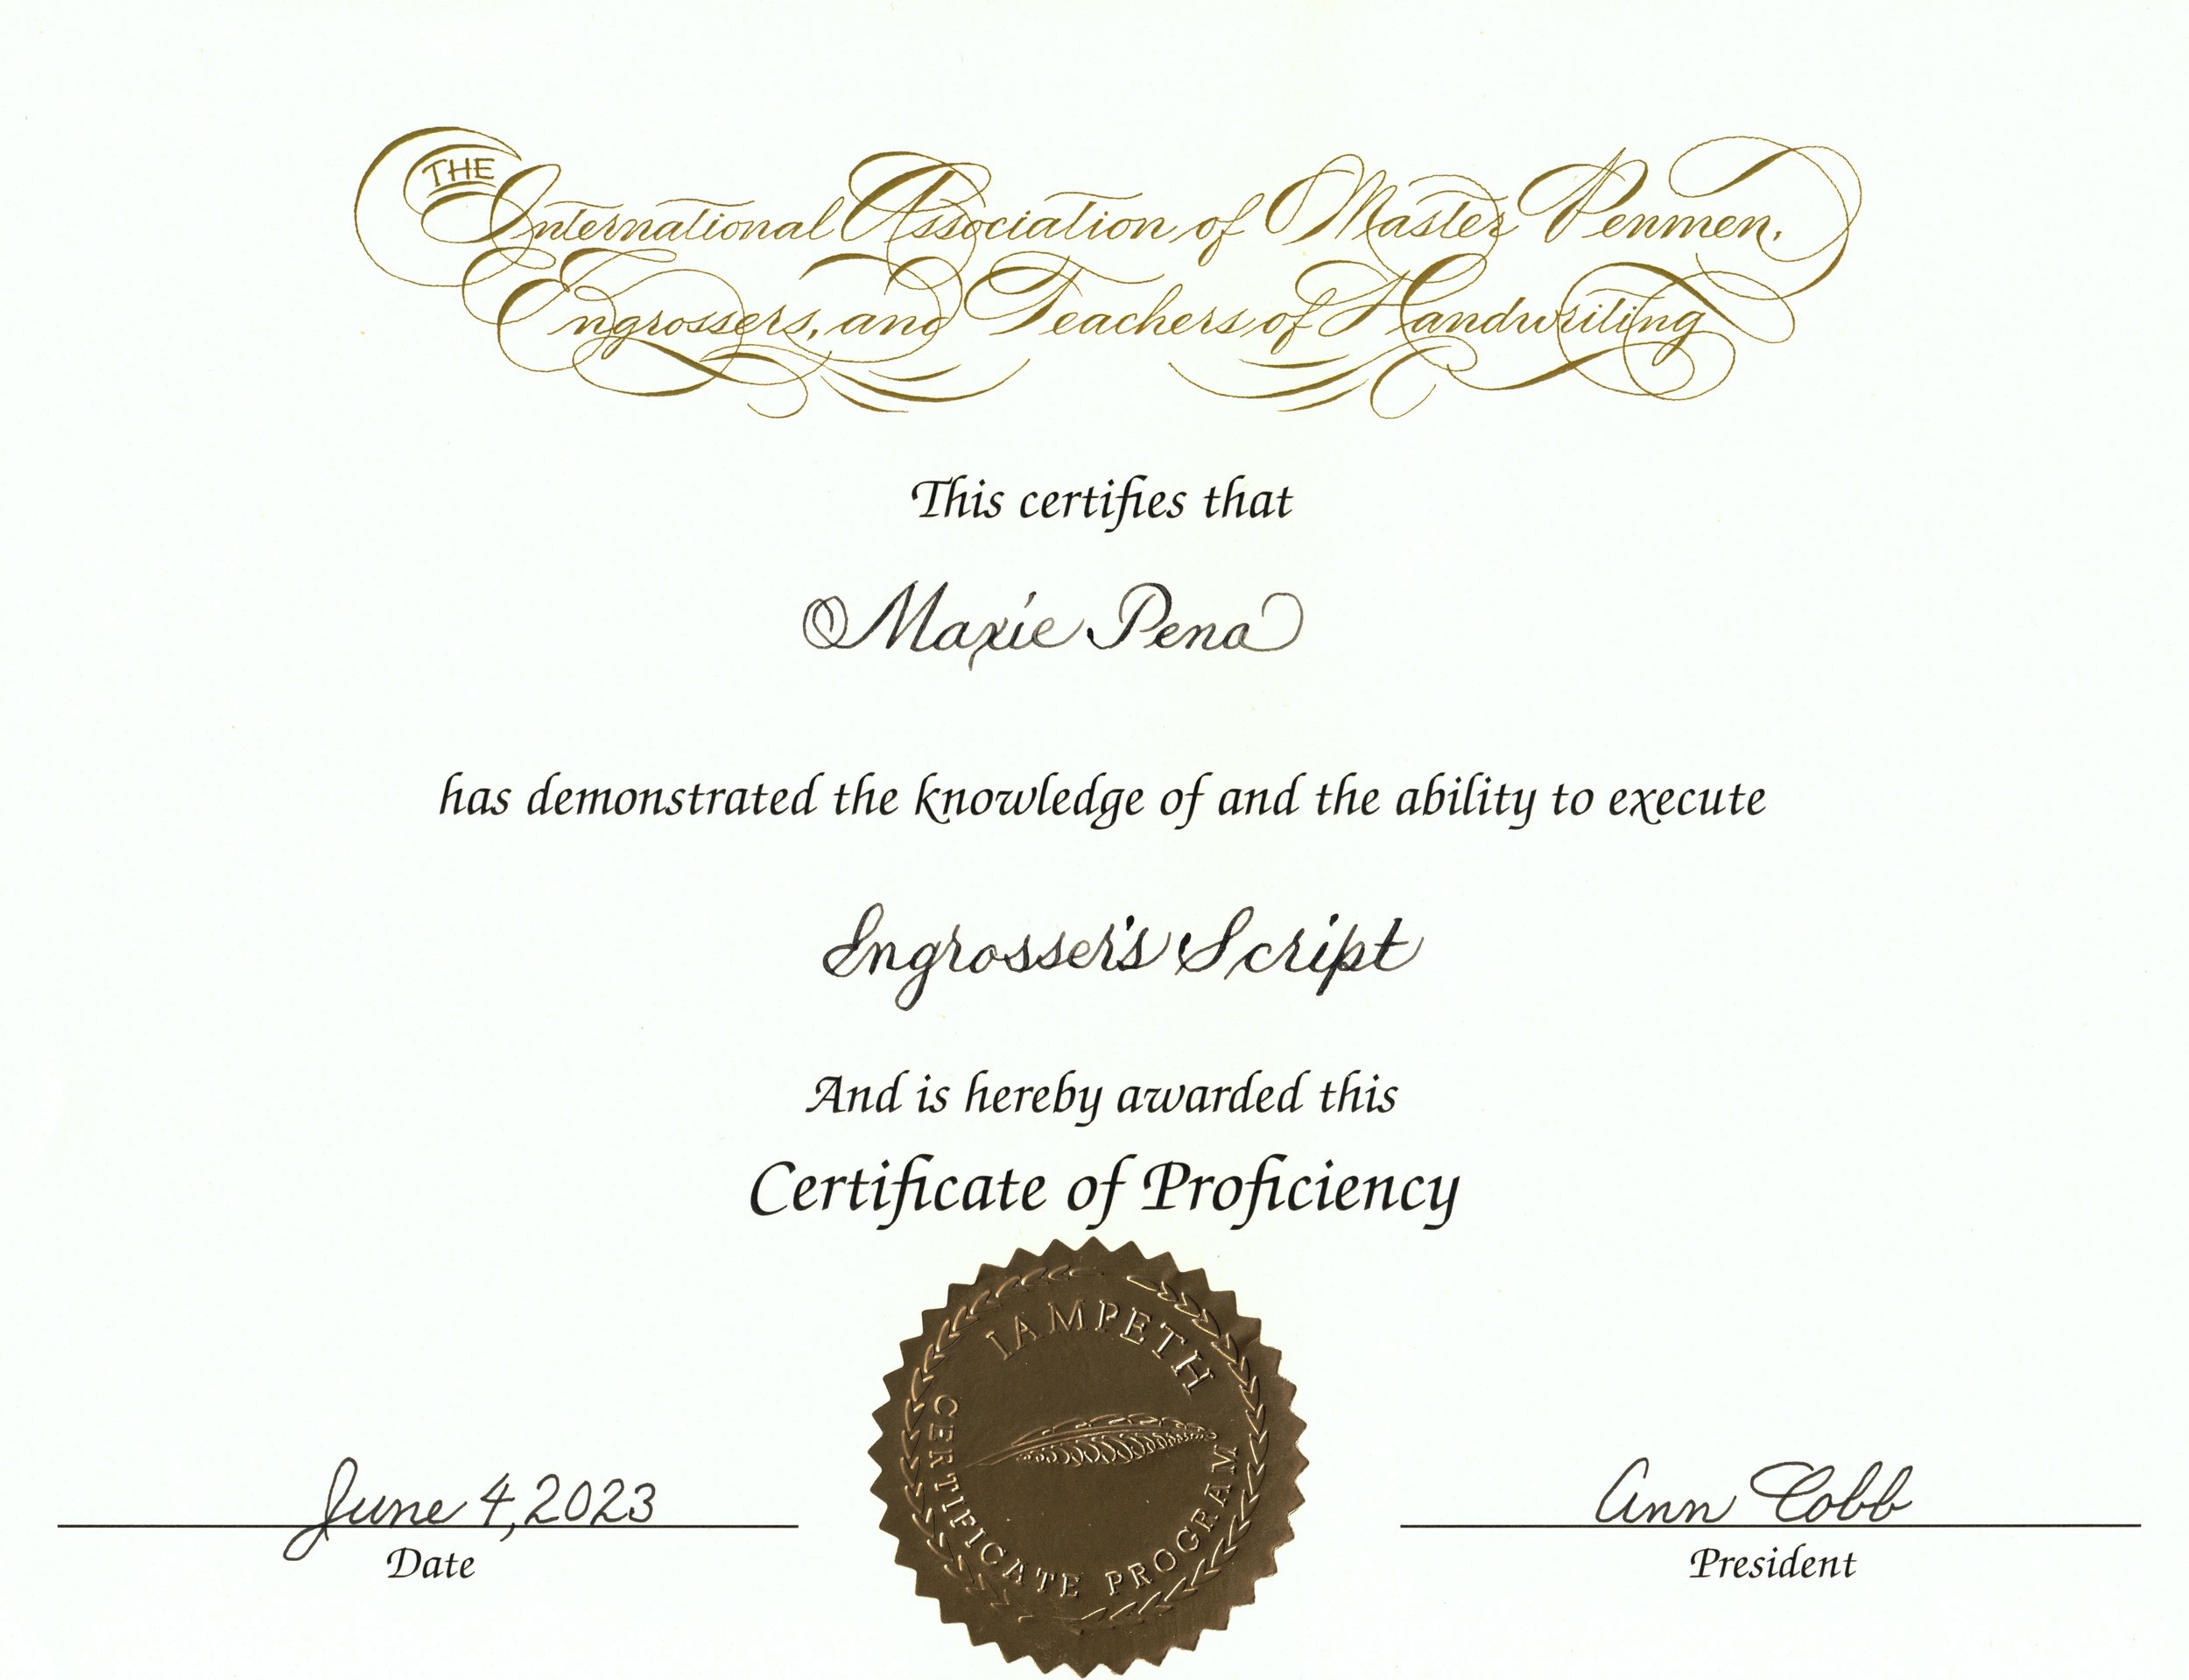 IAMPETH certif of proficiency2.jpg